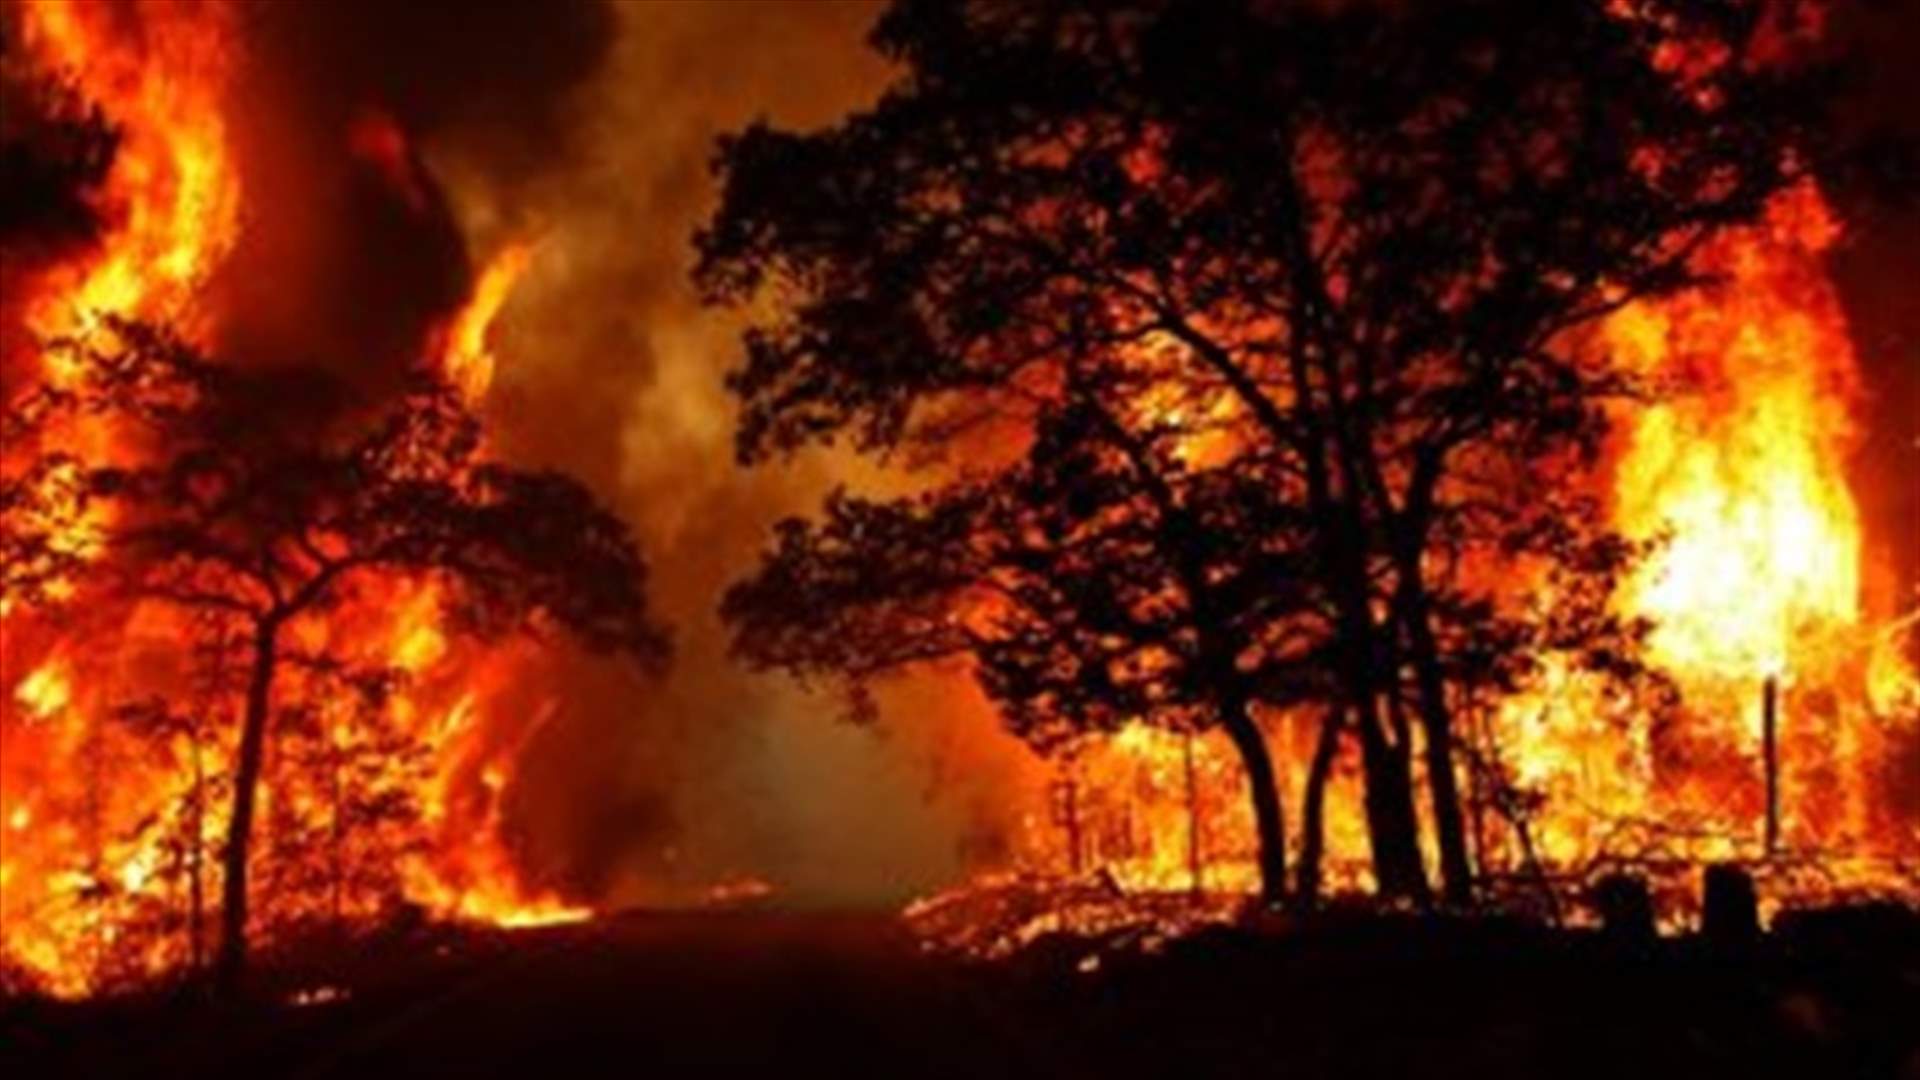 رجال الإطفاء يكافحون لاحتواء حرائق غابات في نيوزيلندا